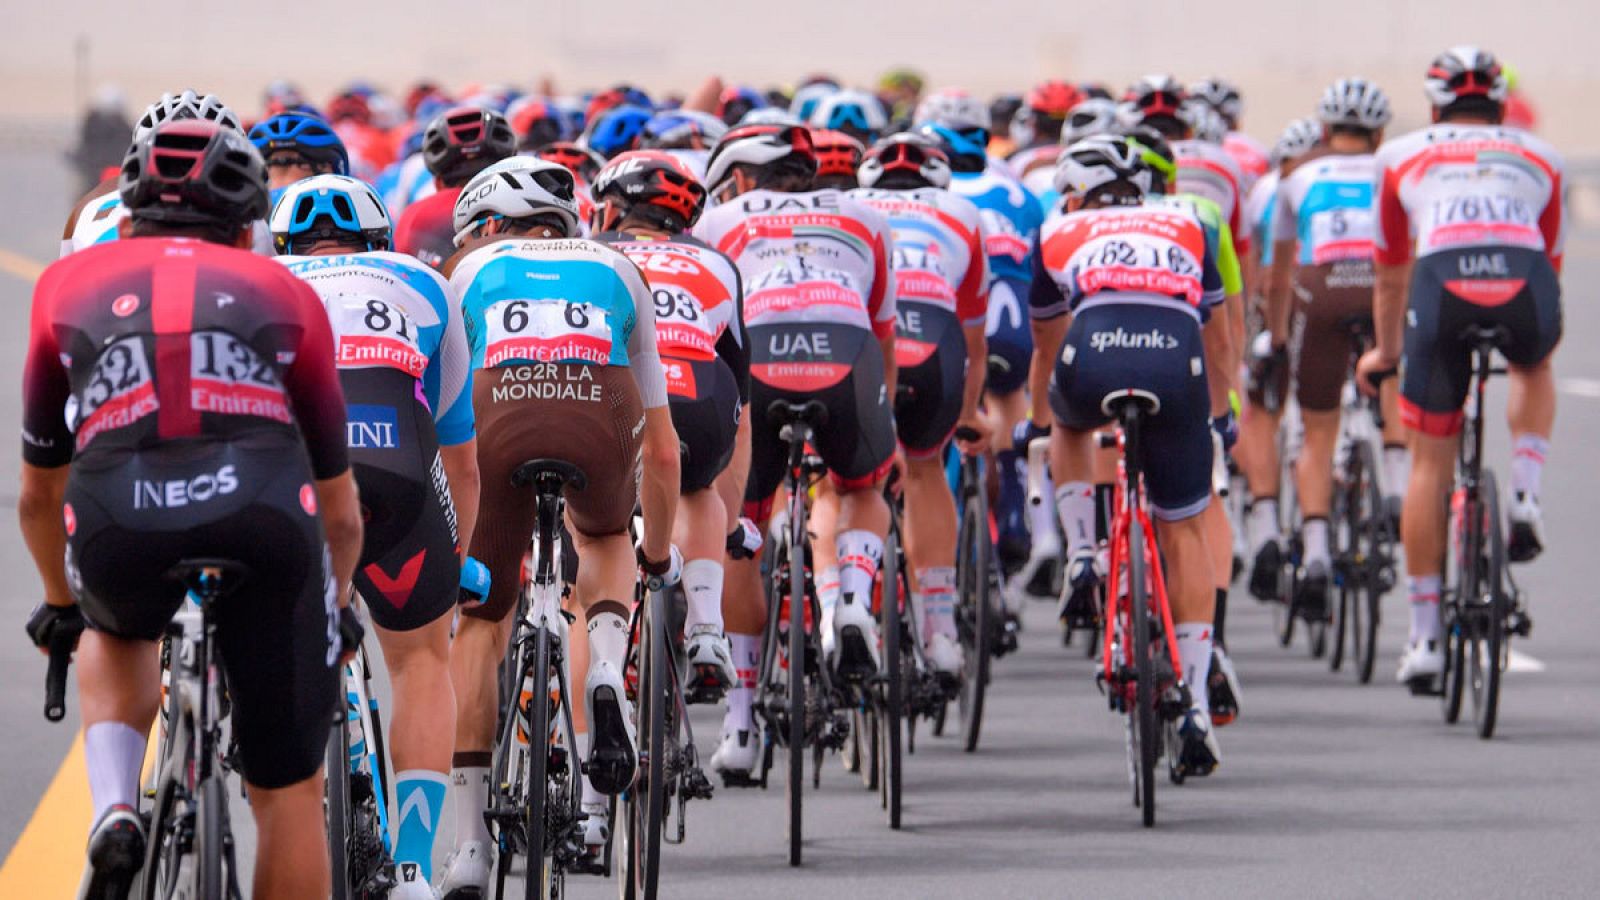 Ciclistas durante el UAE tour en Dubai, Emiratos Árabes